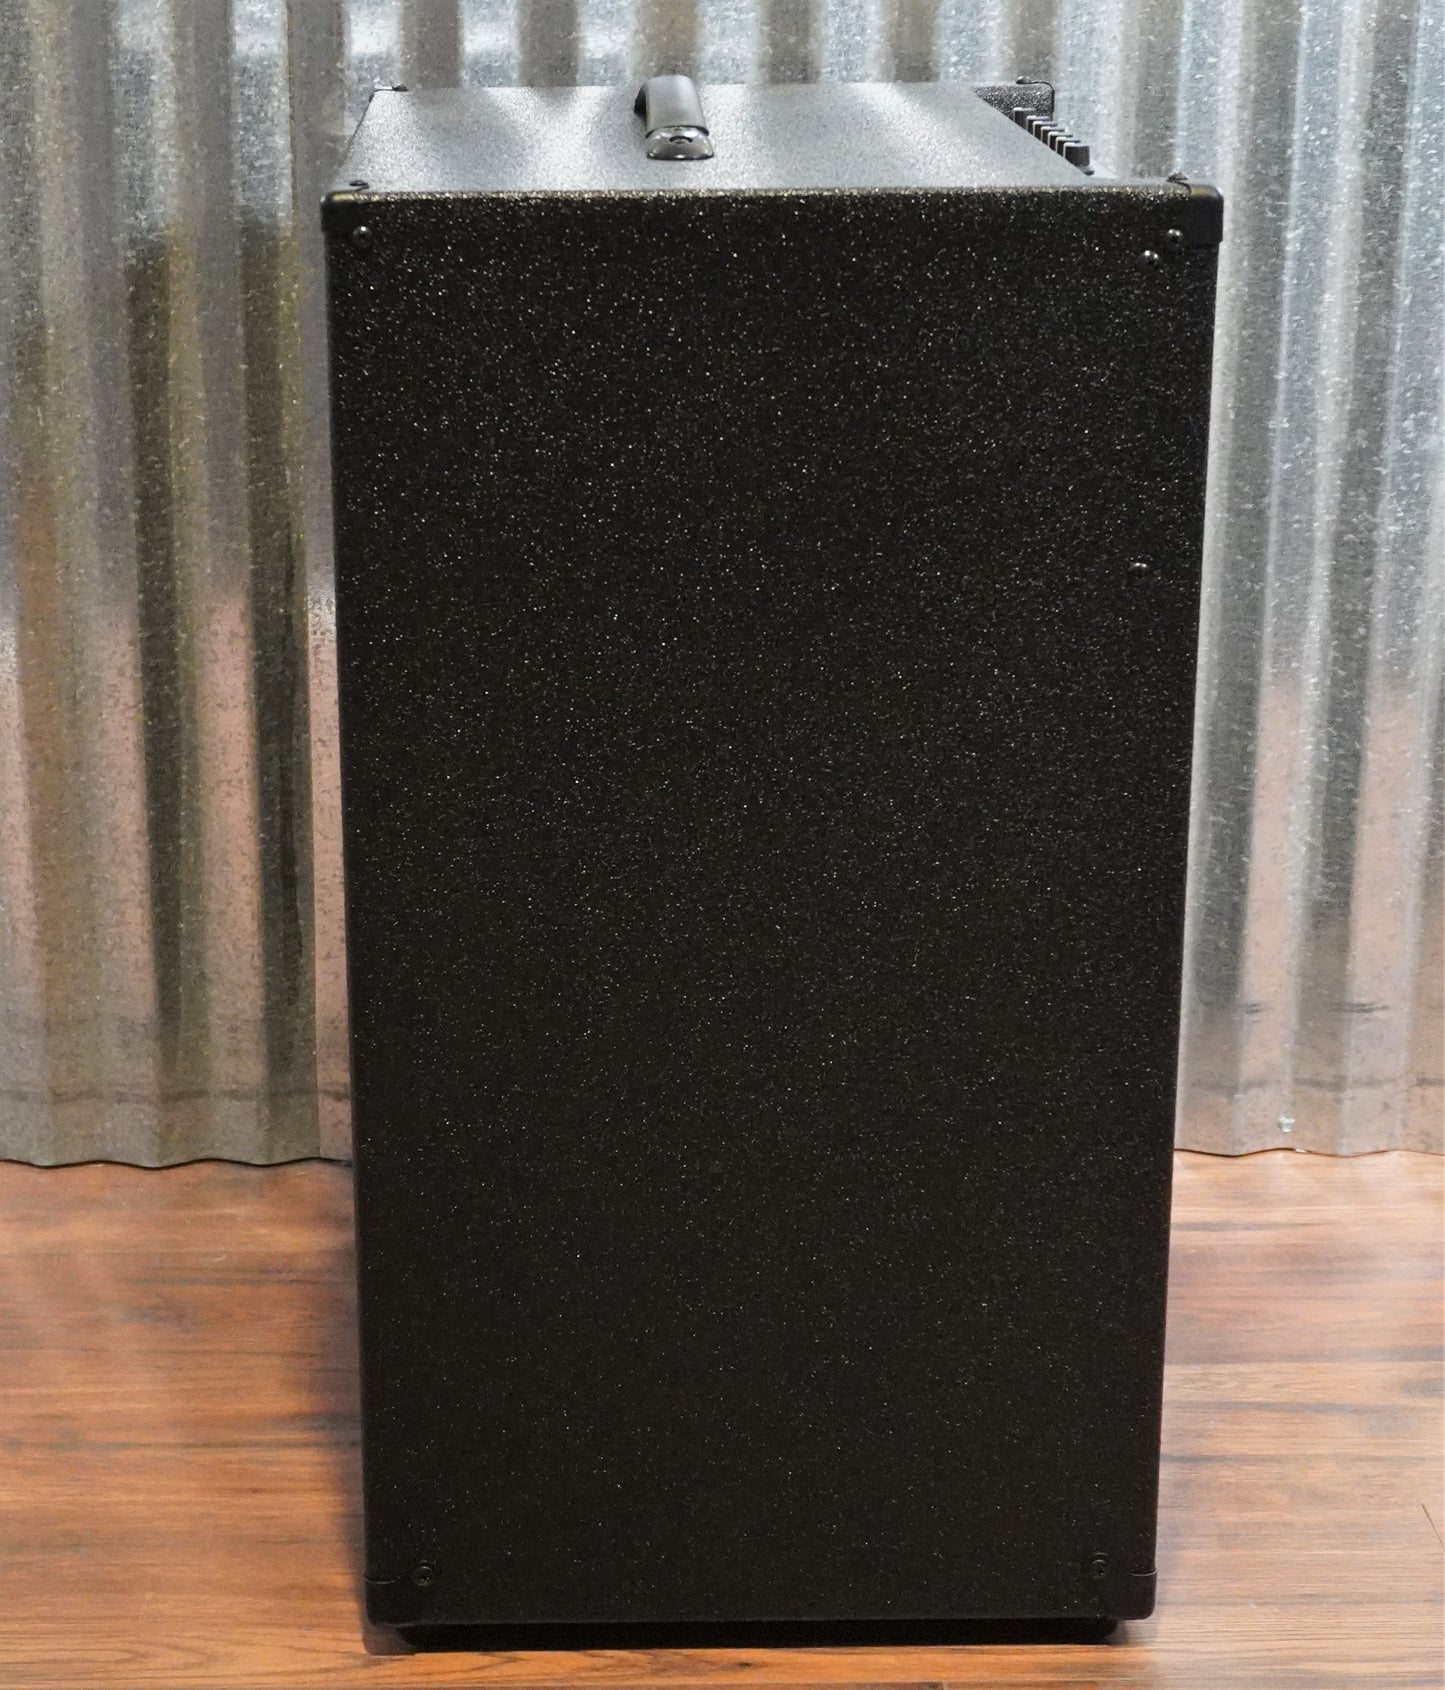 Gallien-Krueger GK MB 212-II 2x12" 500 Watt Ultra Light Bass Combo Amplifier